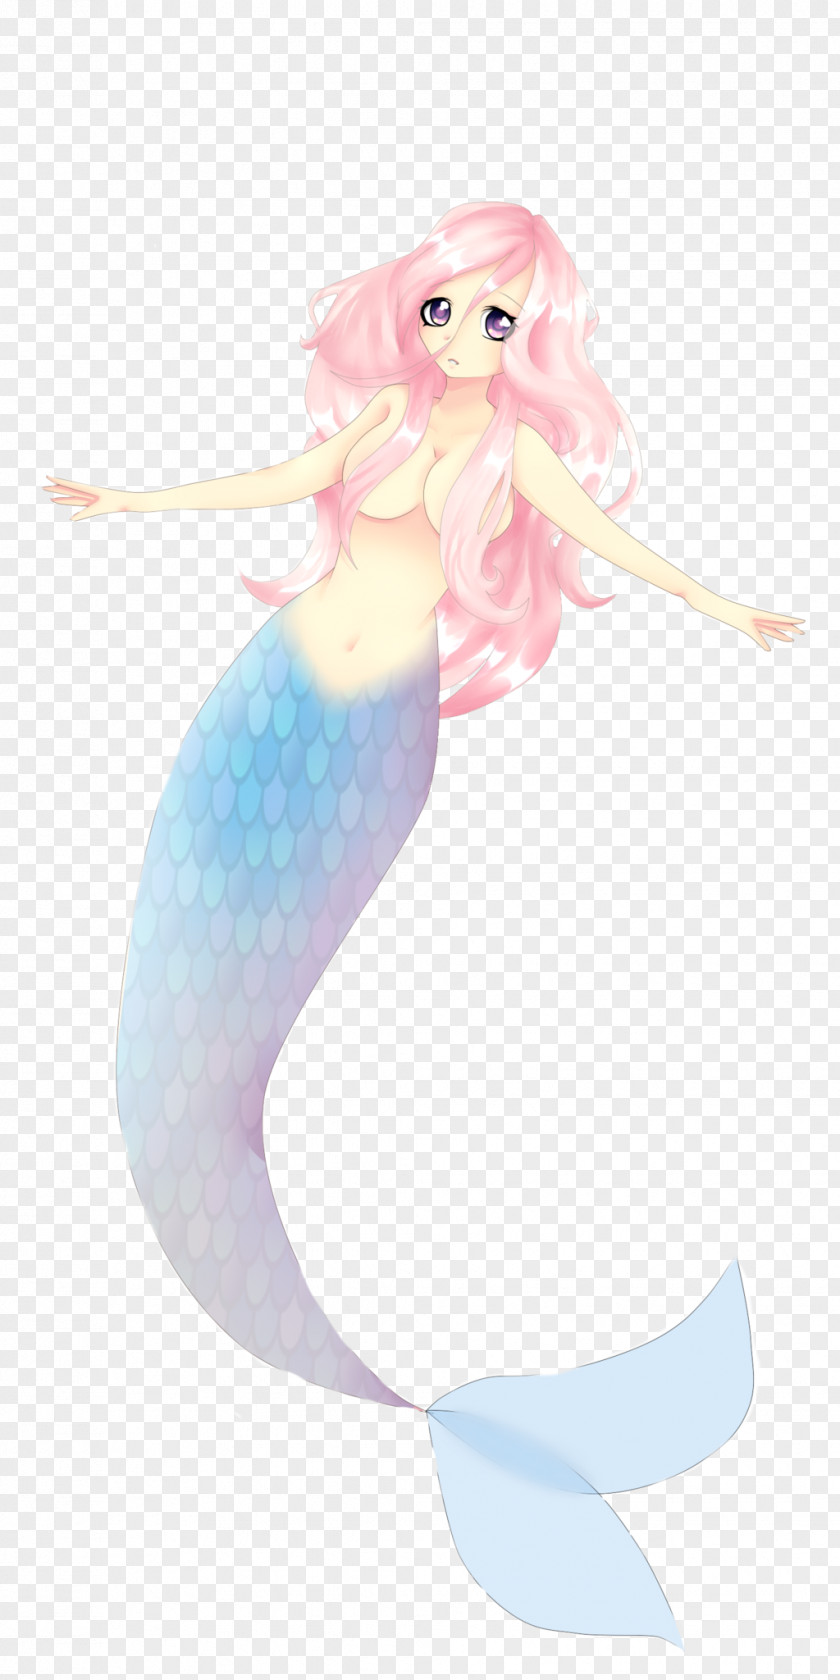 Mermaid Illustration PNG